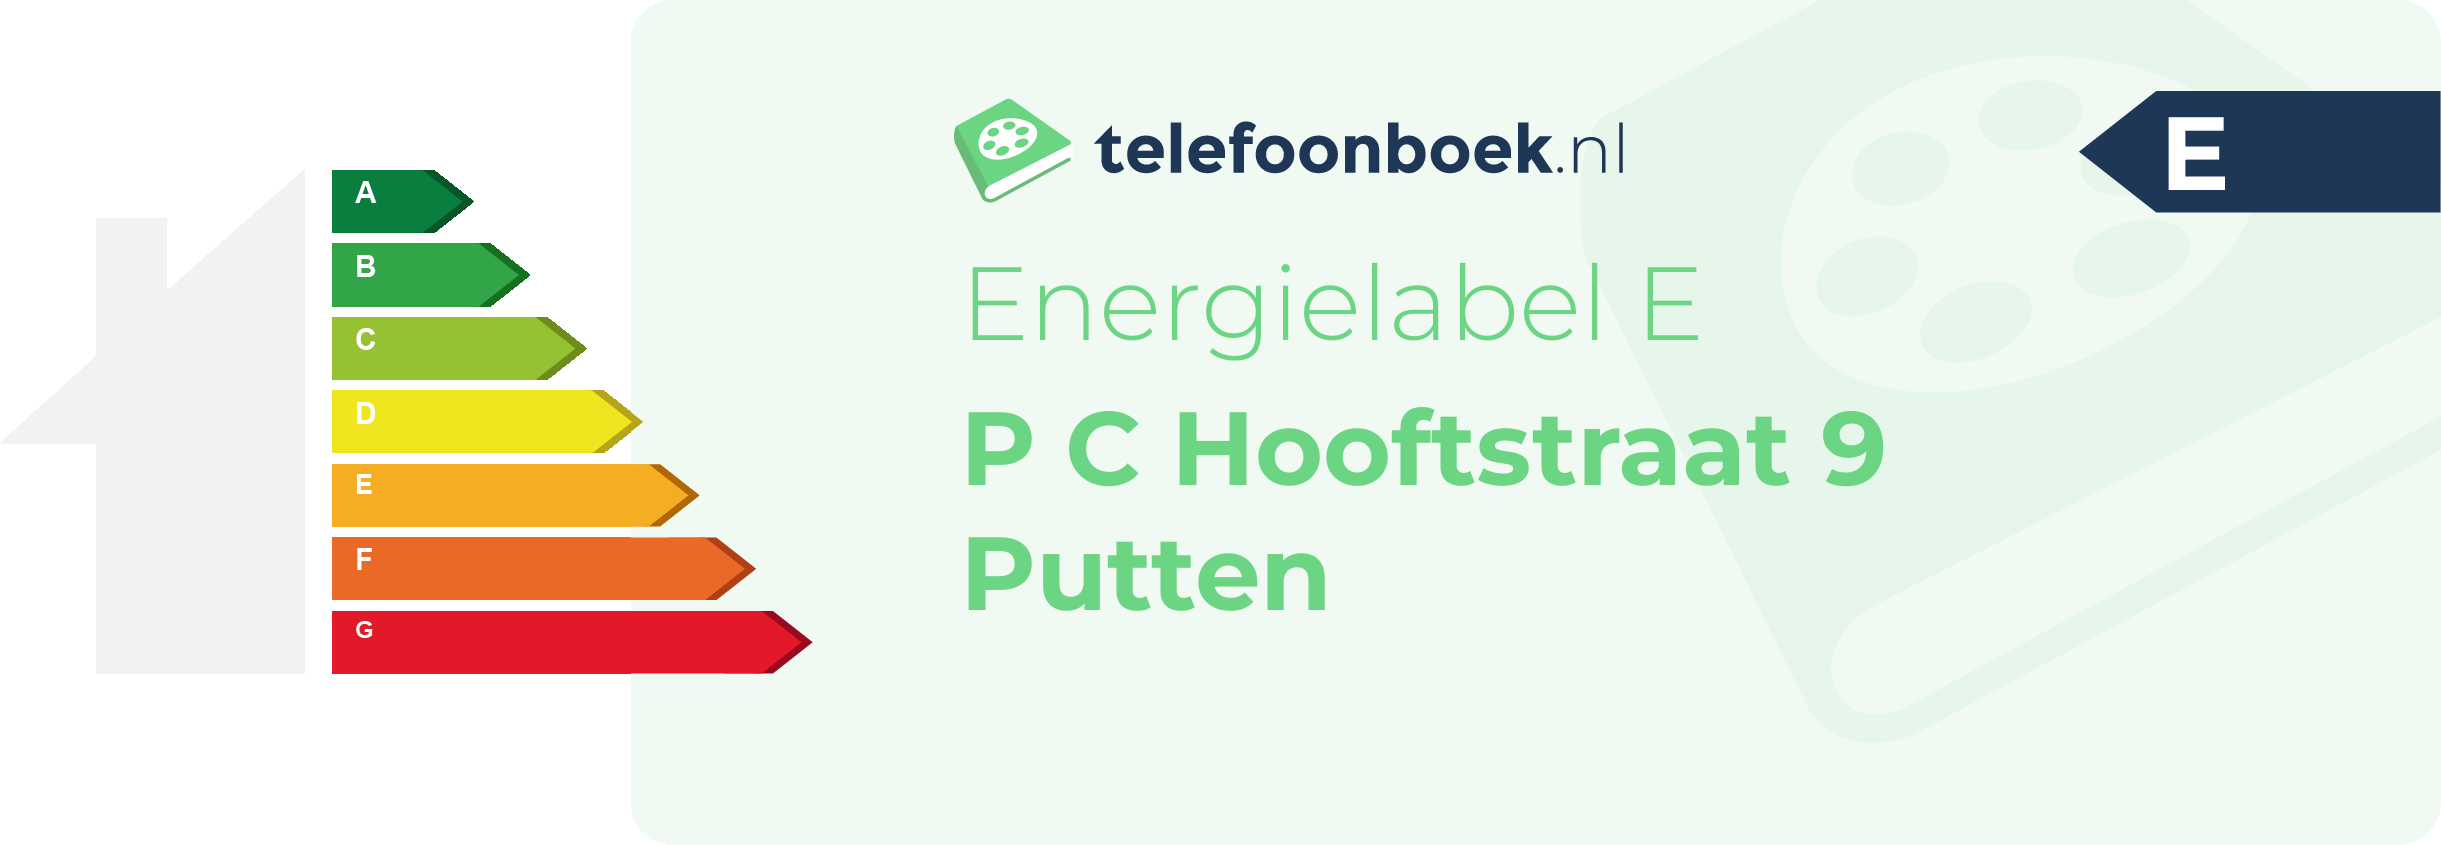 Energielabel P C Hooftstraat 9 Putten